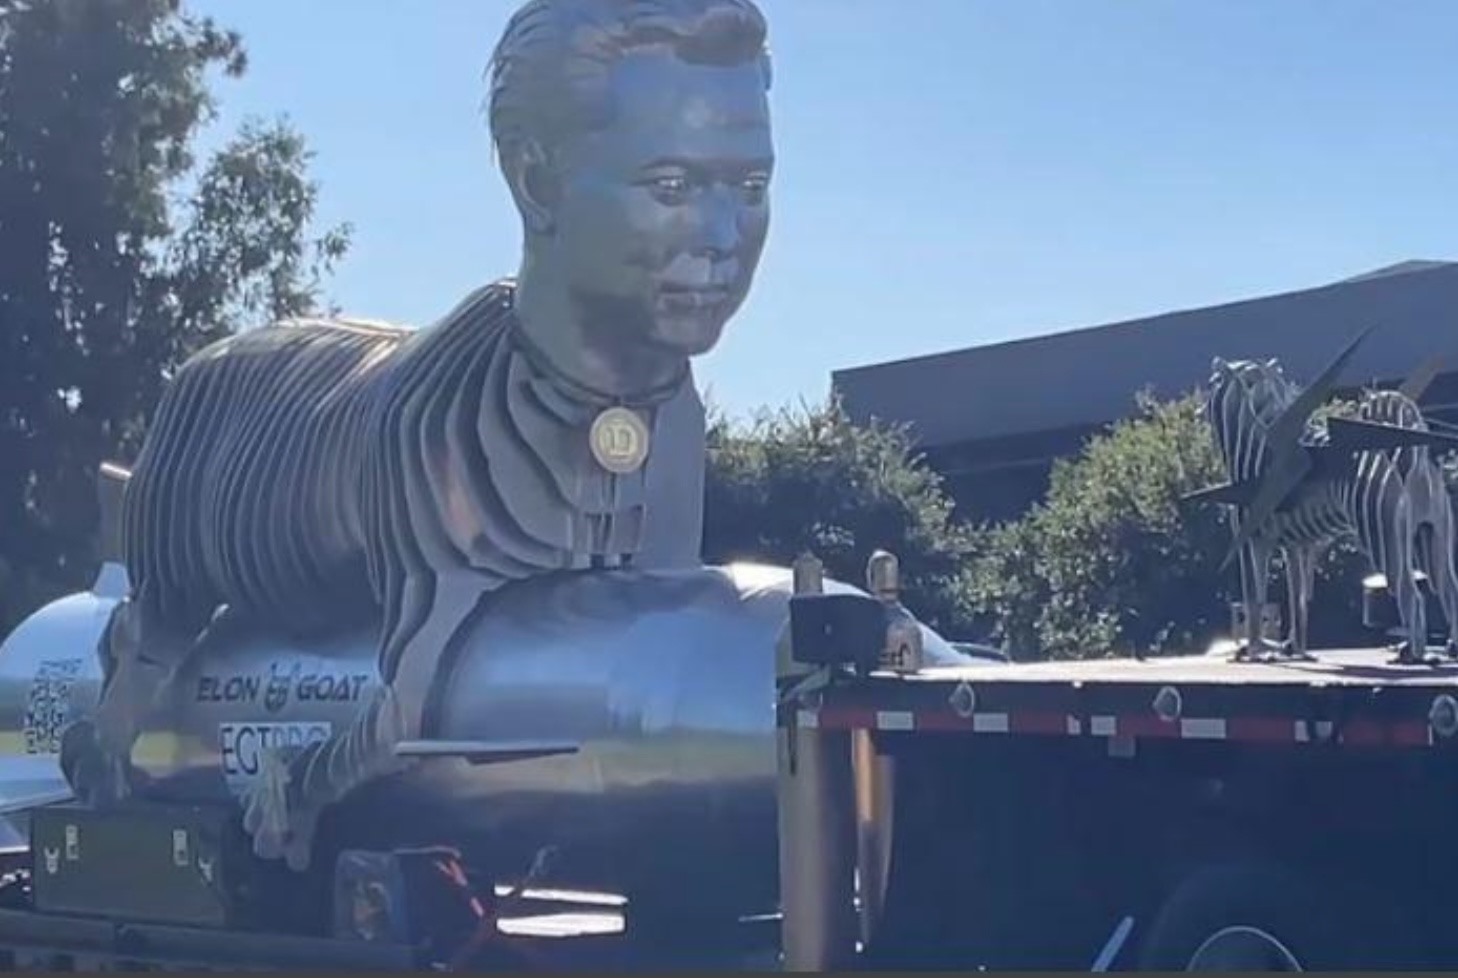 Bức tượng được đưa đi diễu hành trước khi gửi tặng Elon Musk. Ảnh: $EGT